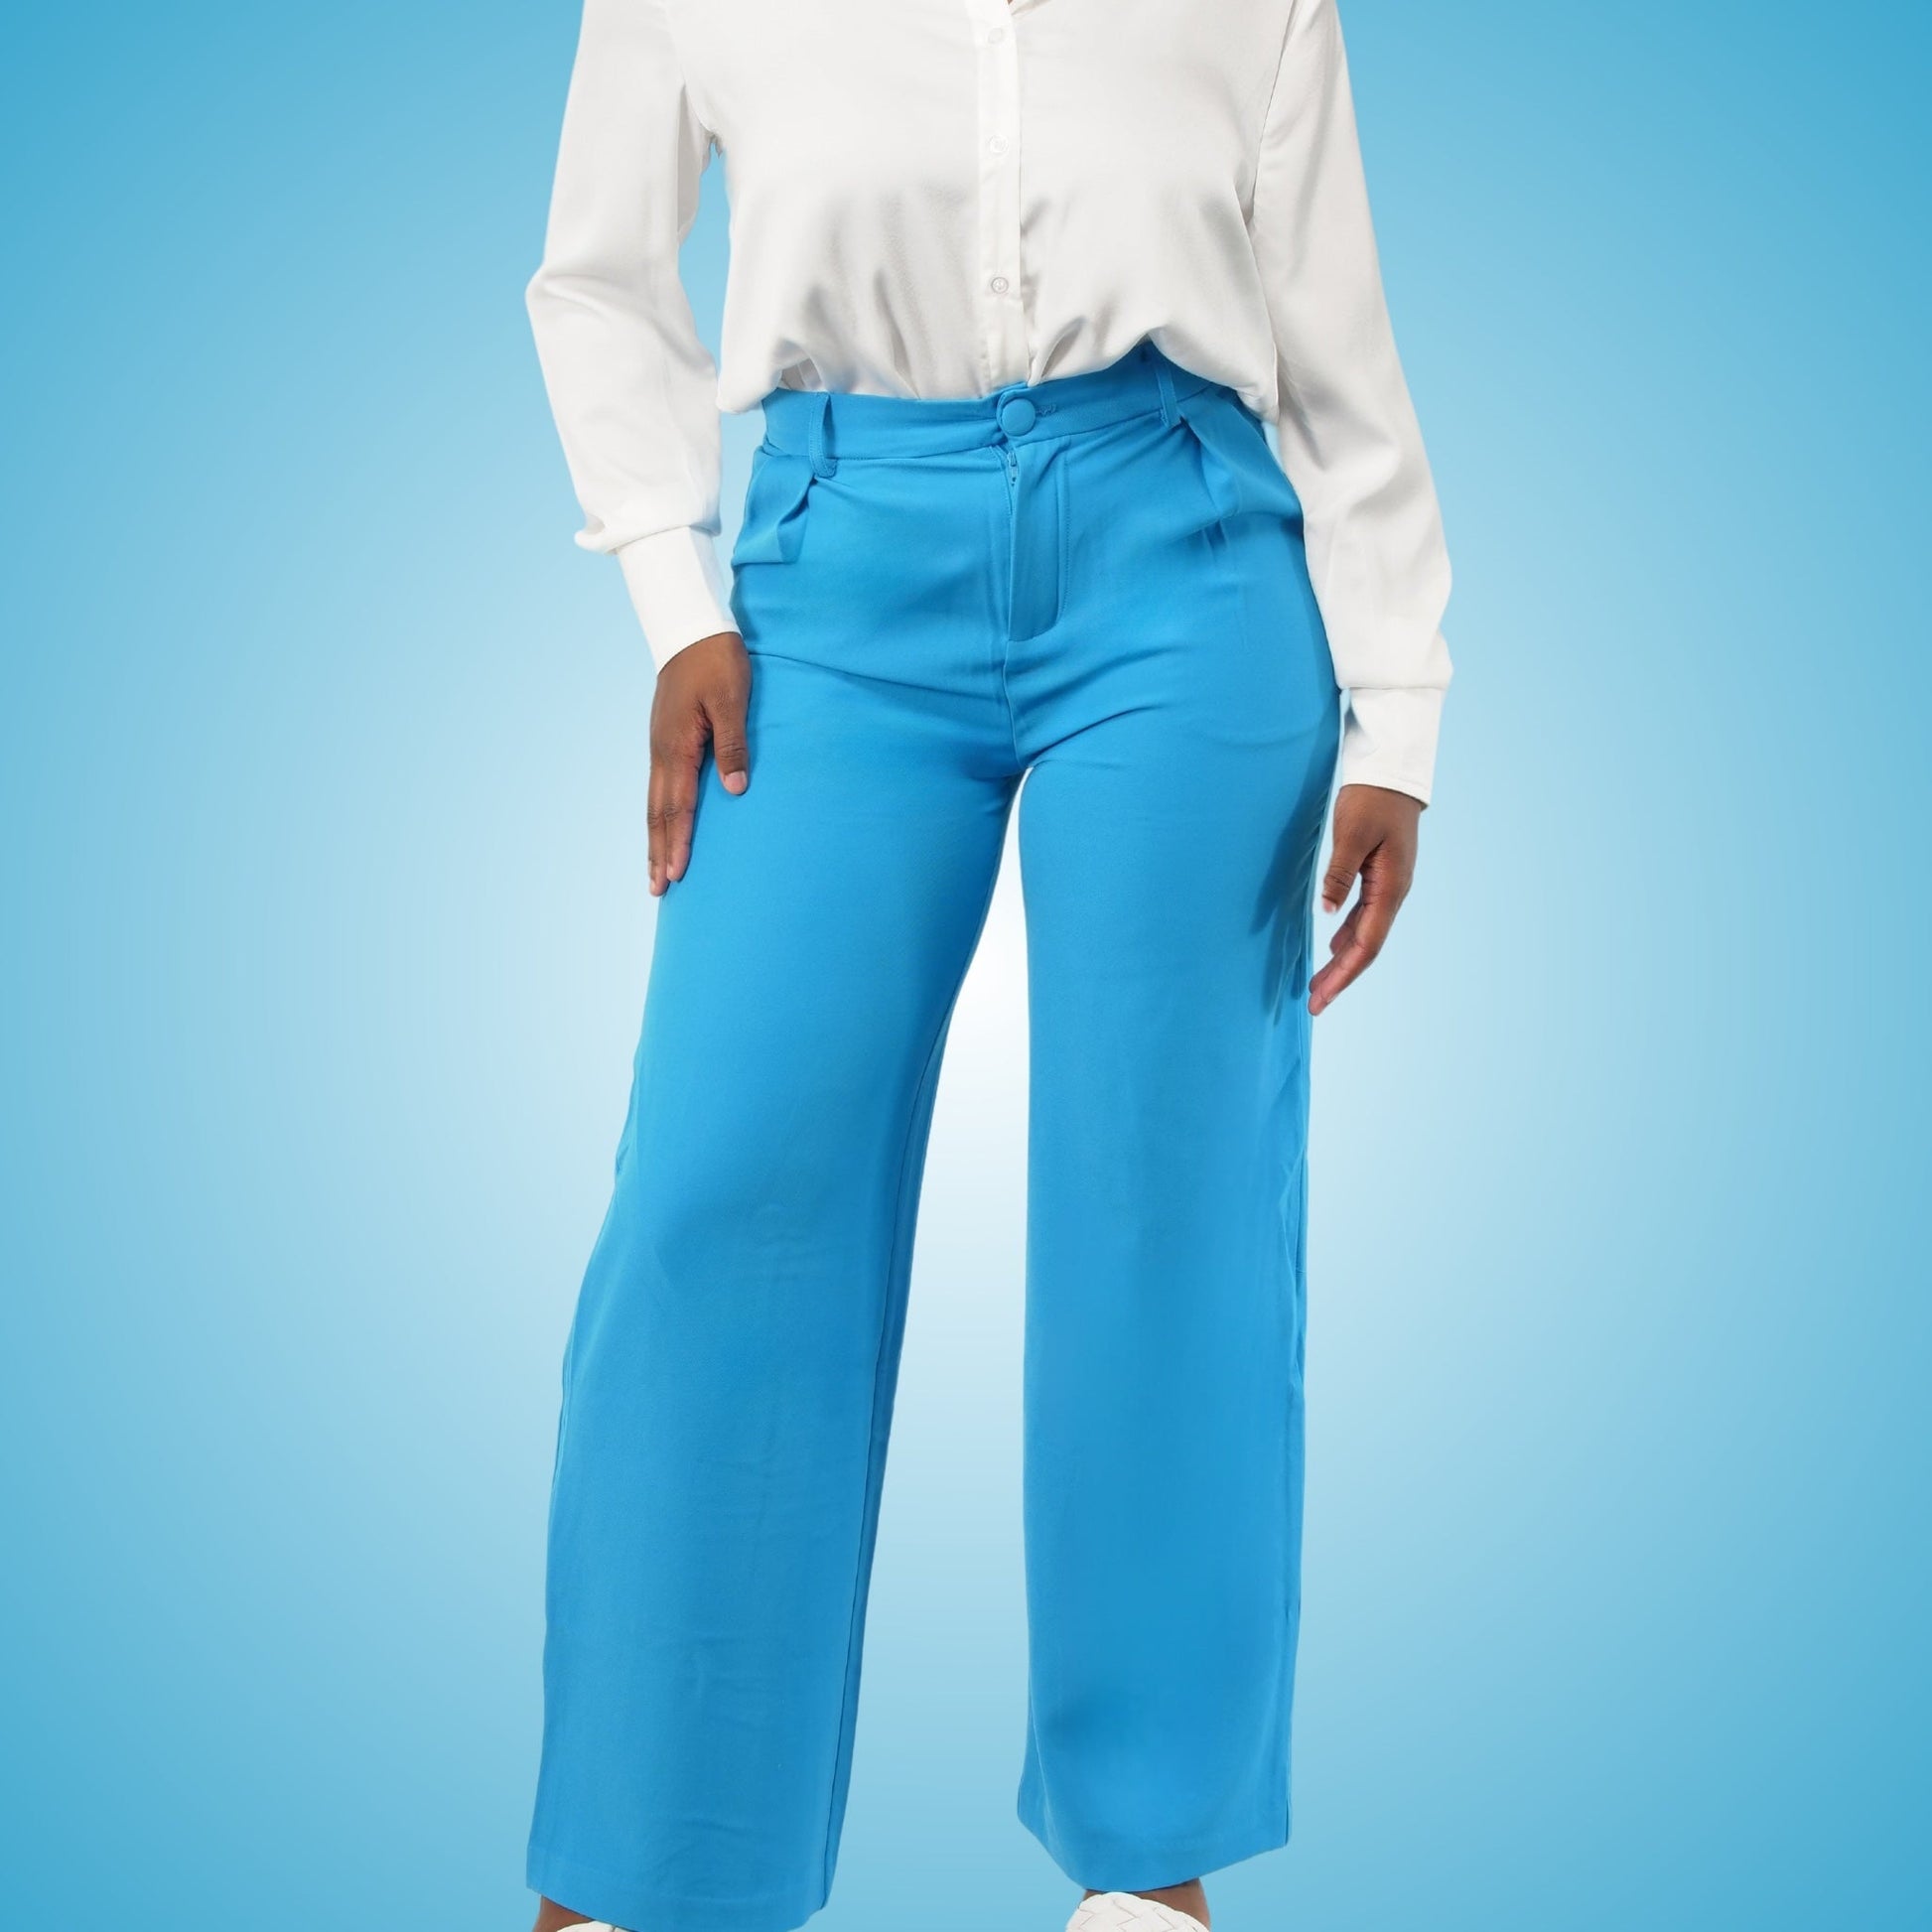 Pantalón de vestir azul para mujer – Mo'Nique Couture Fashions